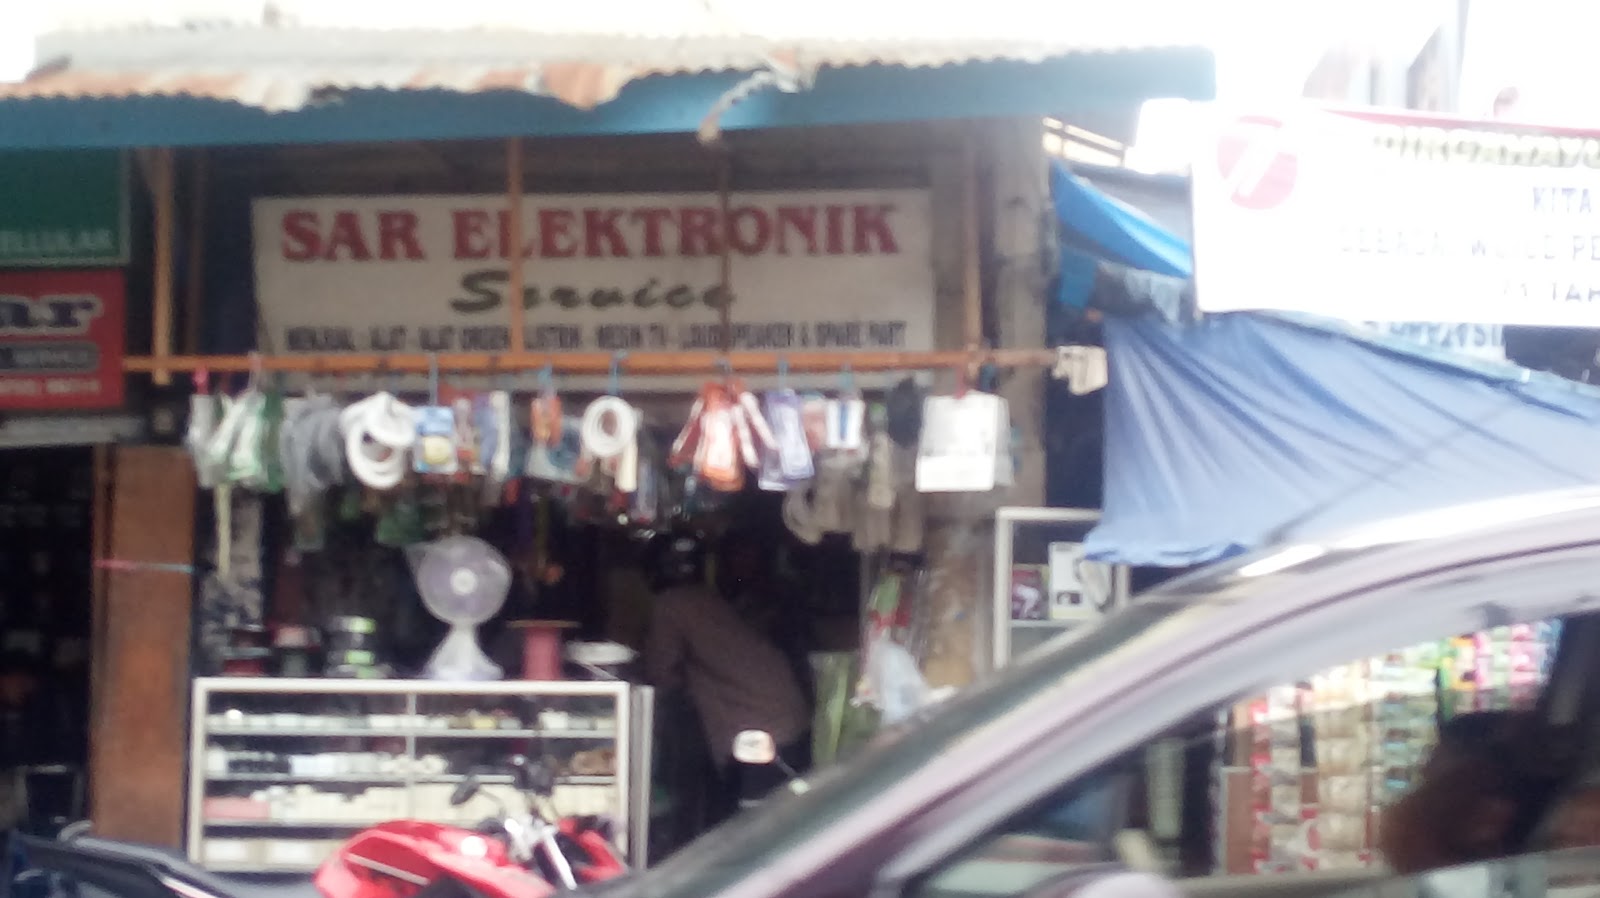 Gambar Sar Electronik Service